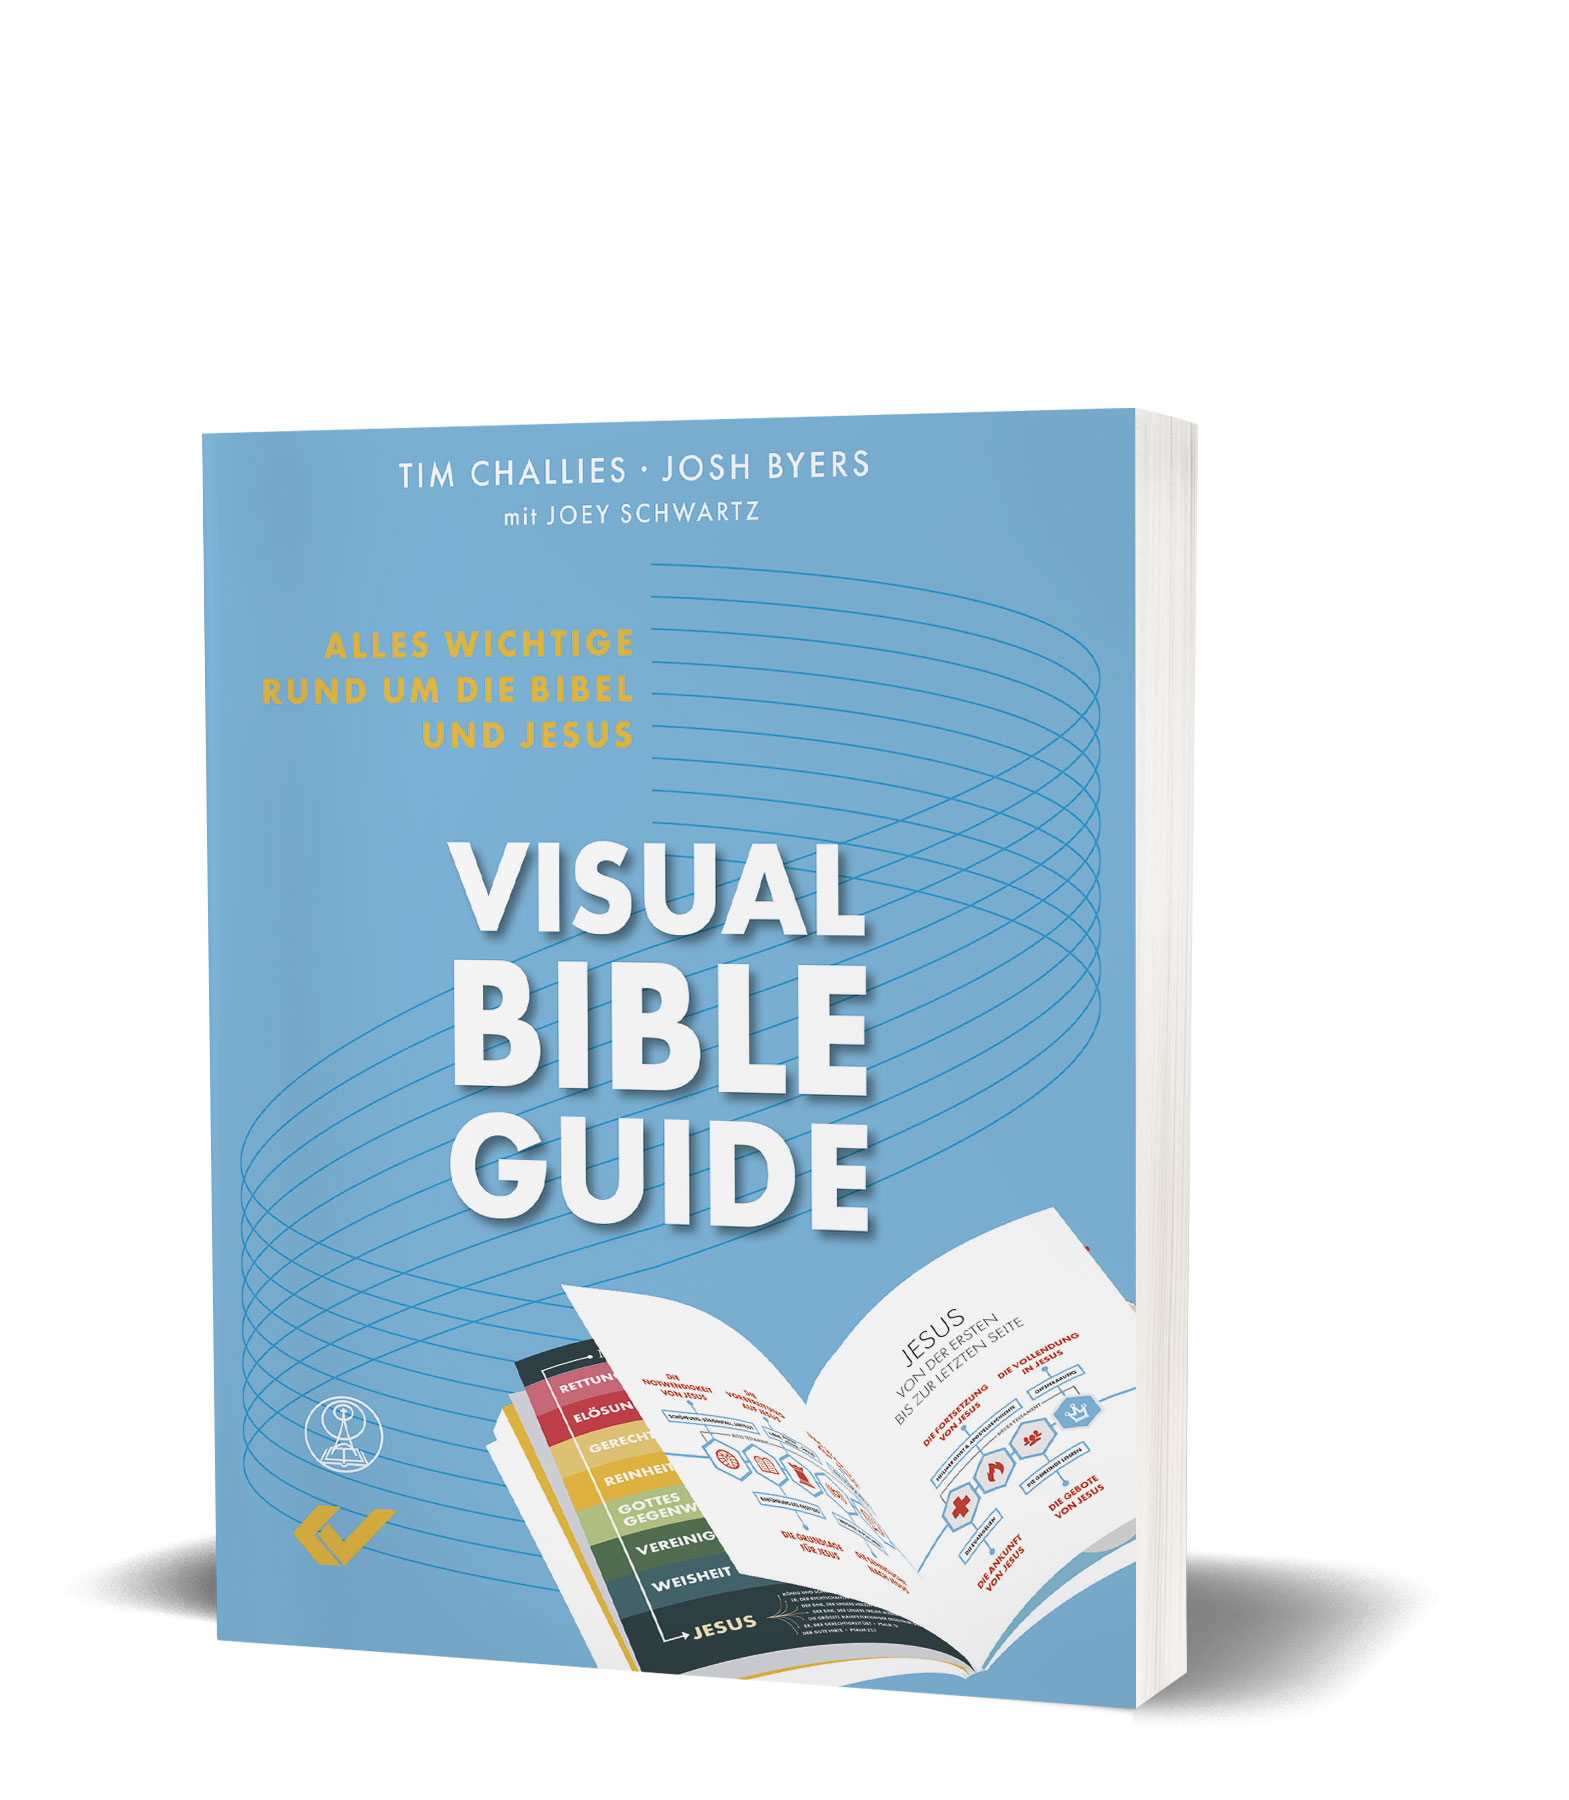 Tim Challies / Josh Byers: Visual Bible Guide - Alles Wichtige rund um die Bibel und Jesus